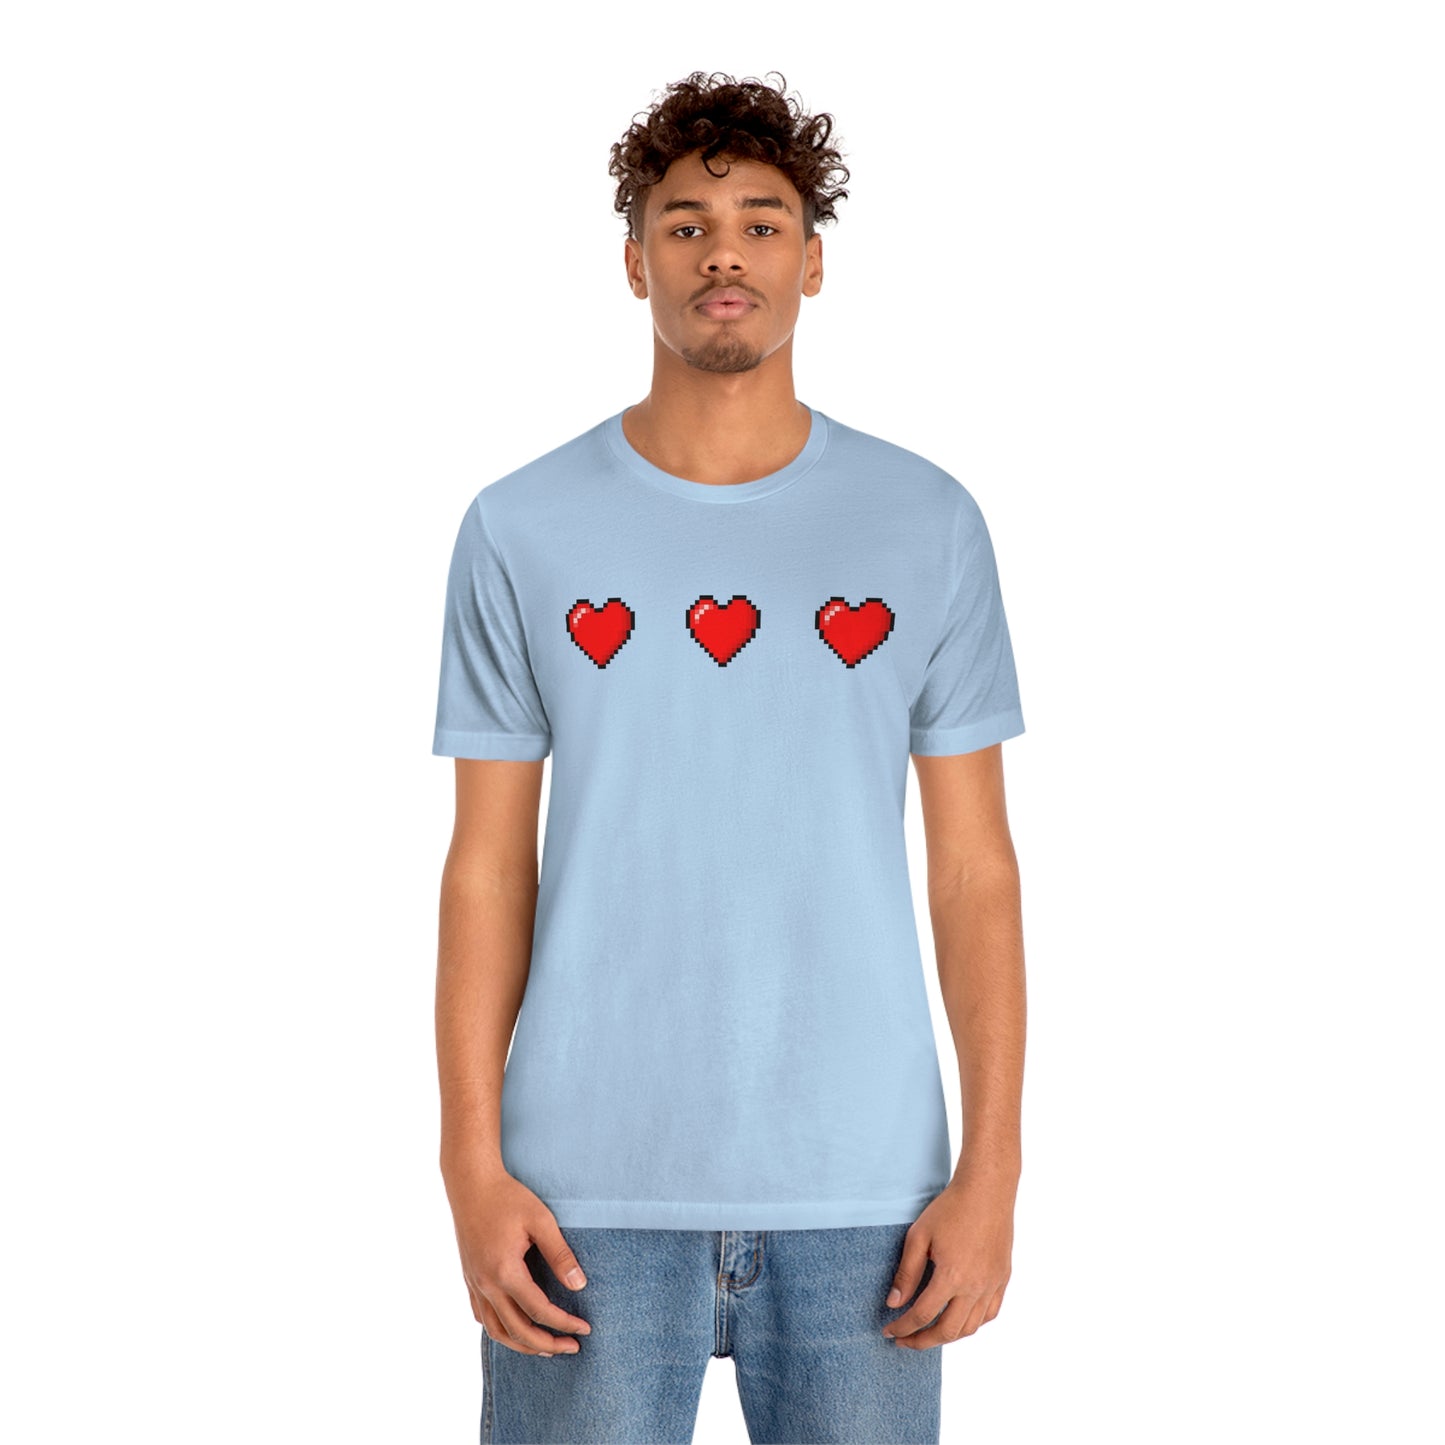 Hearts 8 Bit Style Unisex Jersey Short Sleeve Tee